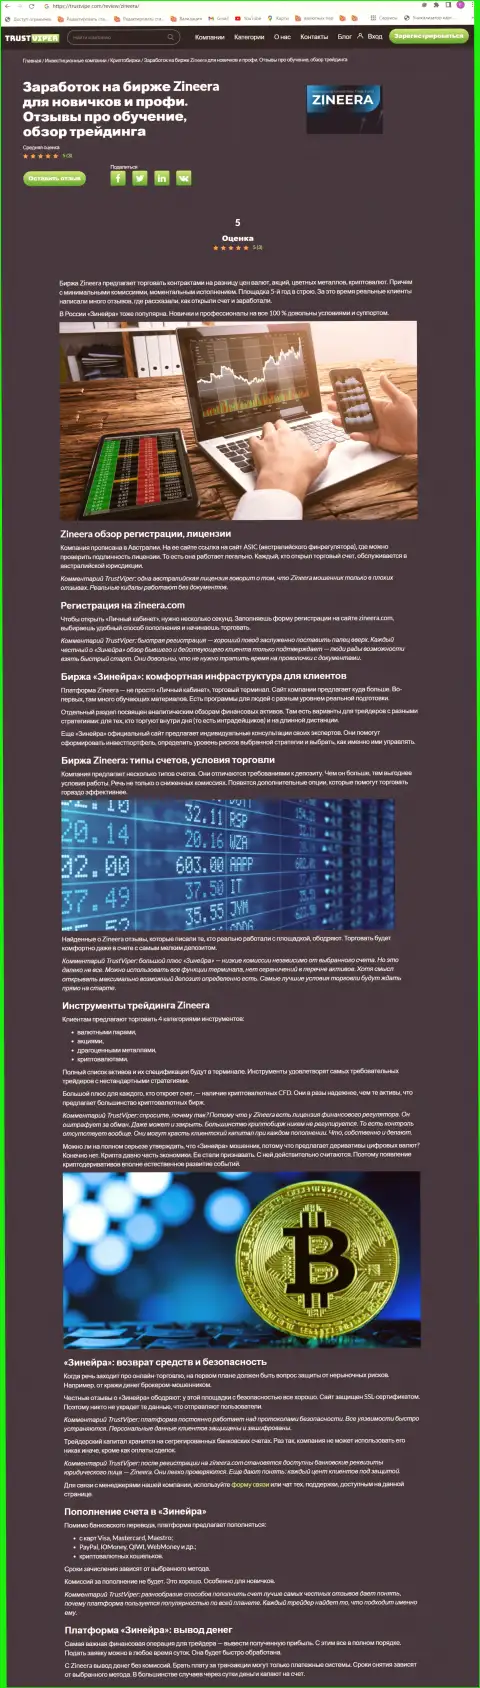 Обзор условий для совершения сделок криптовалютной брокера Зинейра Ком на веб-сайте траствайпер ком